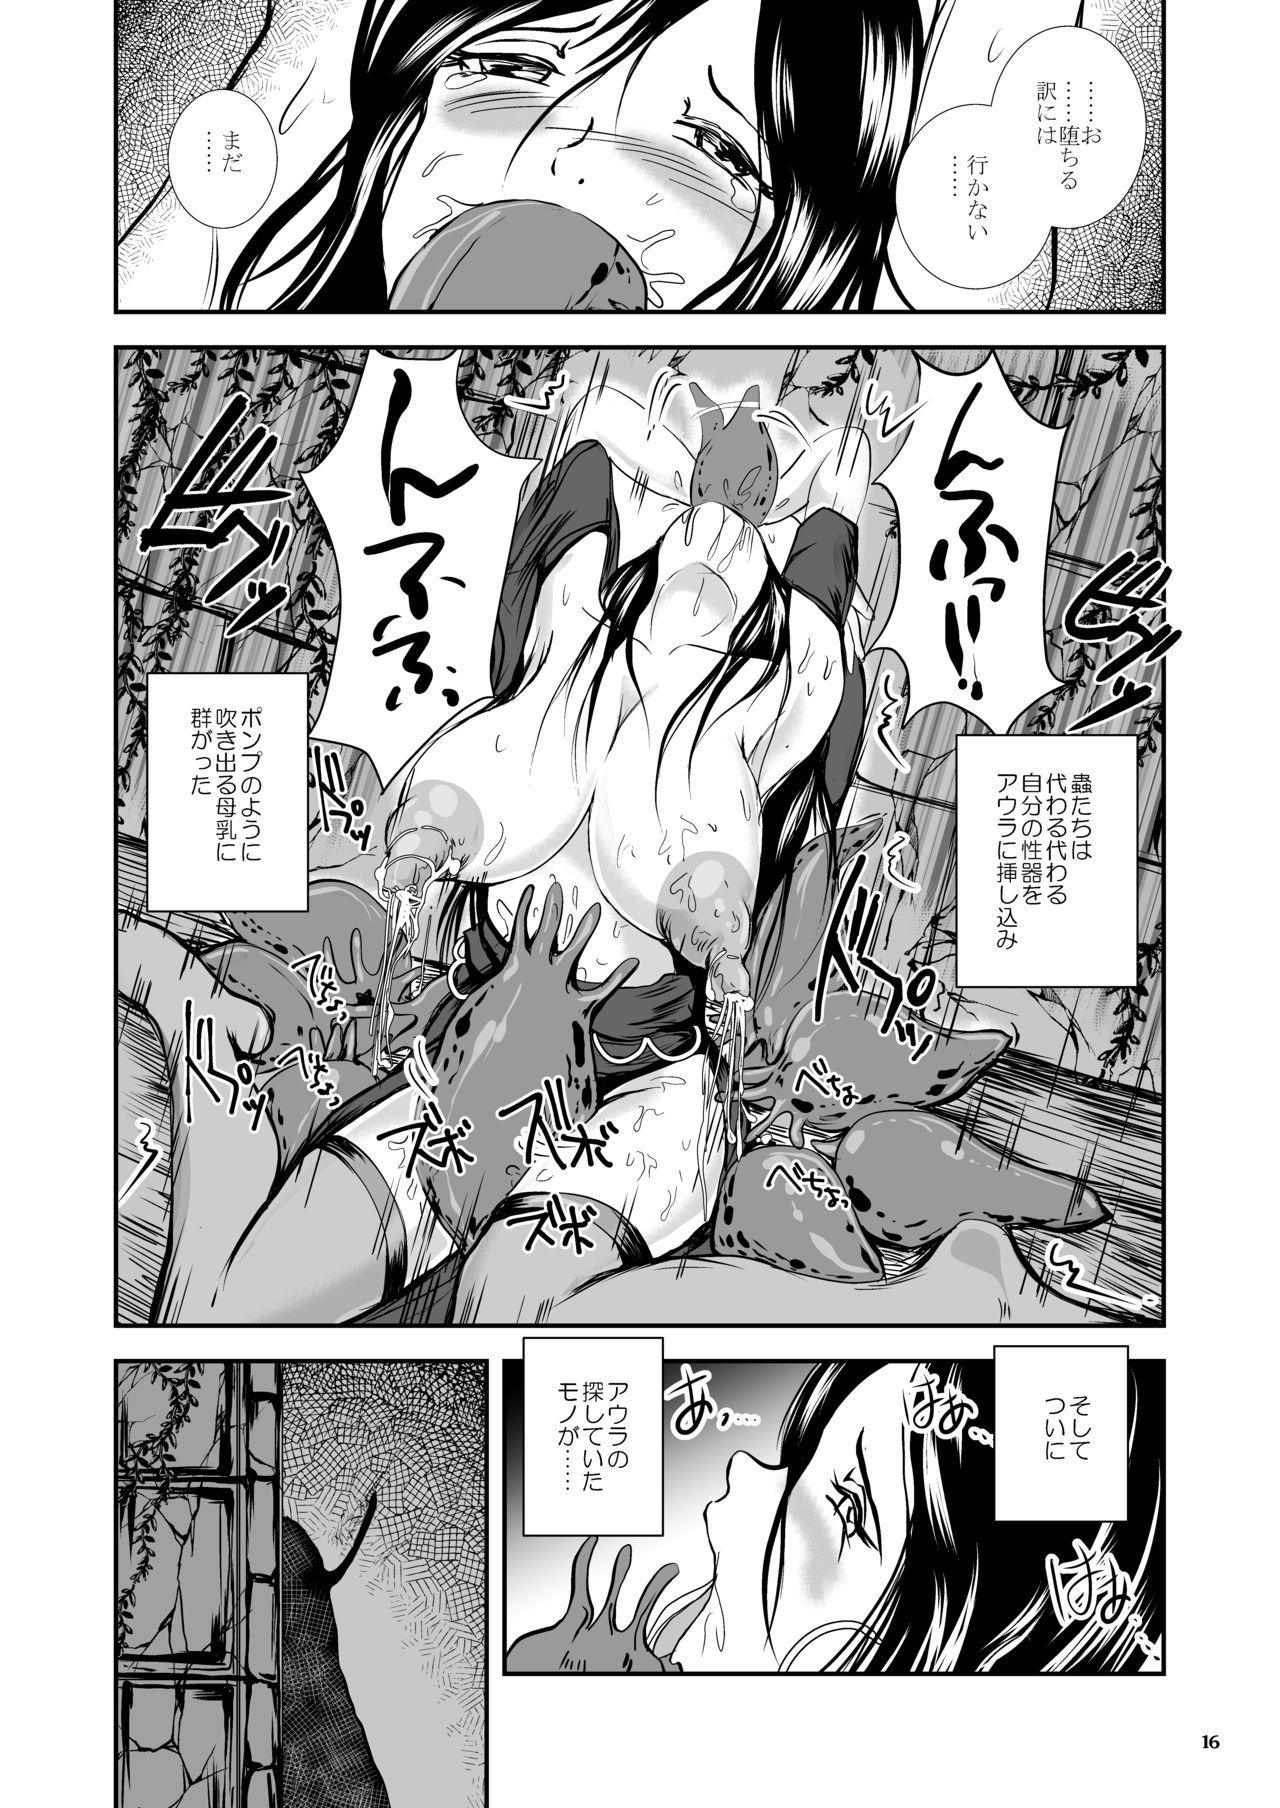 Oonamekuji to Kurokami no Mahoutsukai - Parasitized Giant Slugs V.S. Sorceress of the Black Hair as Aura 107